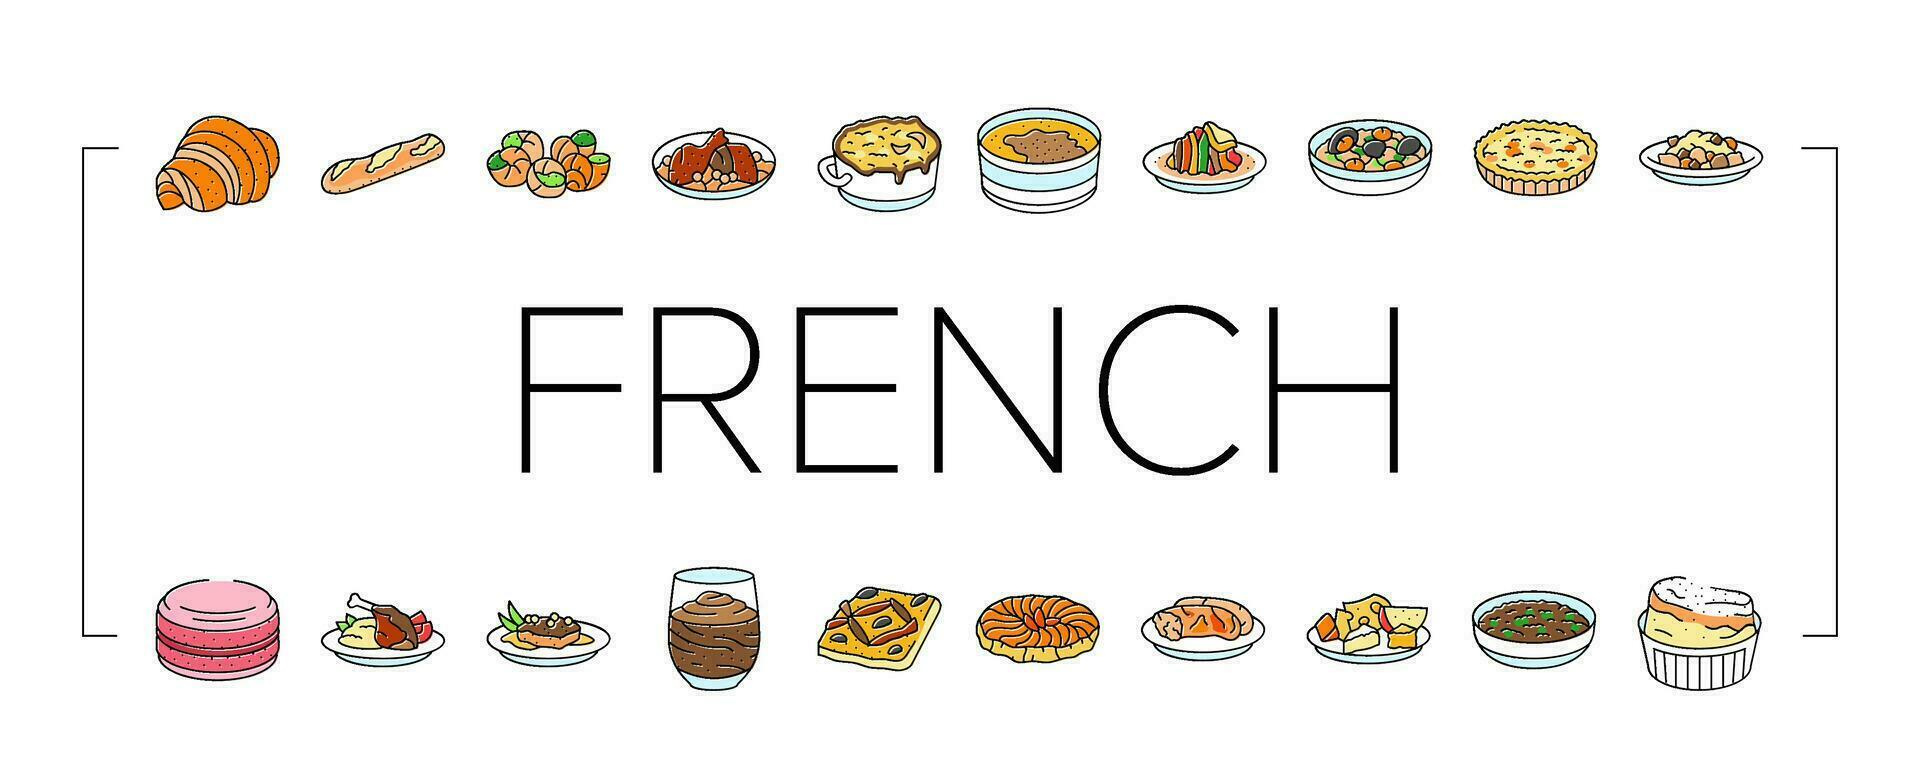 Frans keuken voedsel maaltijd pictogrammen reeks vector